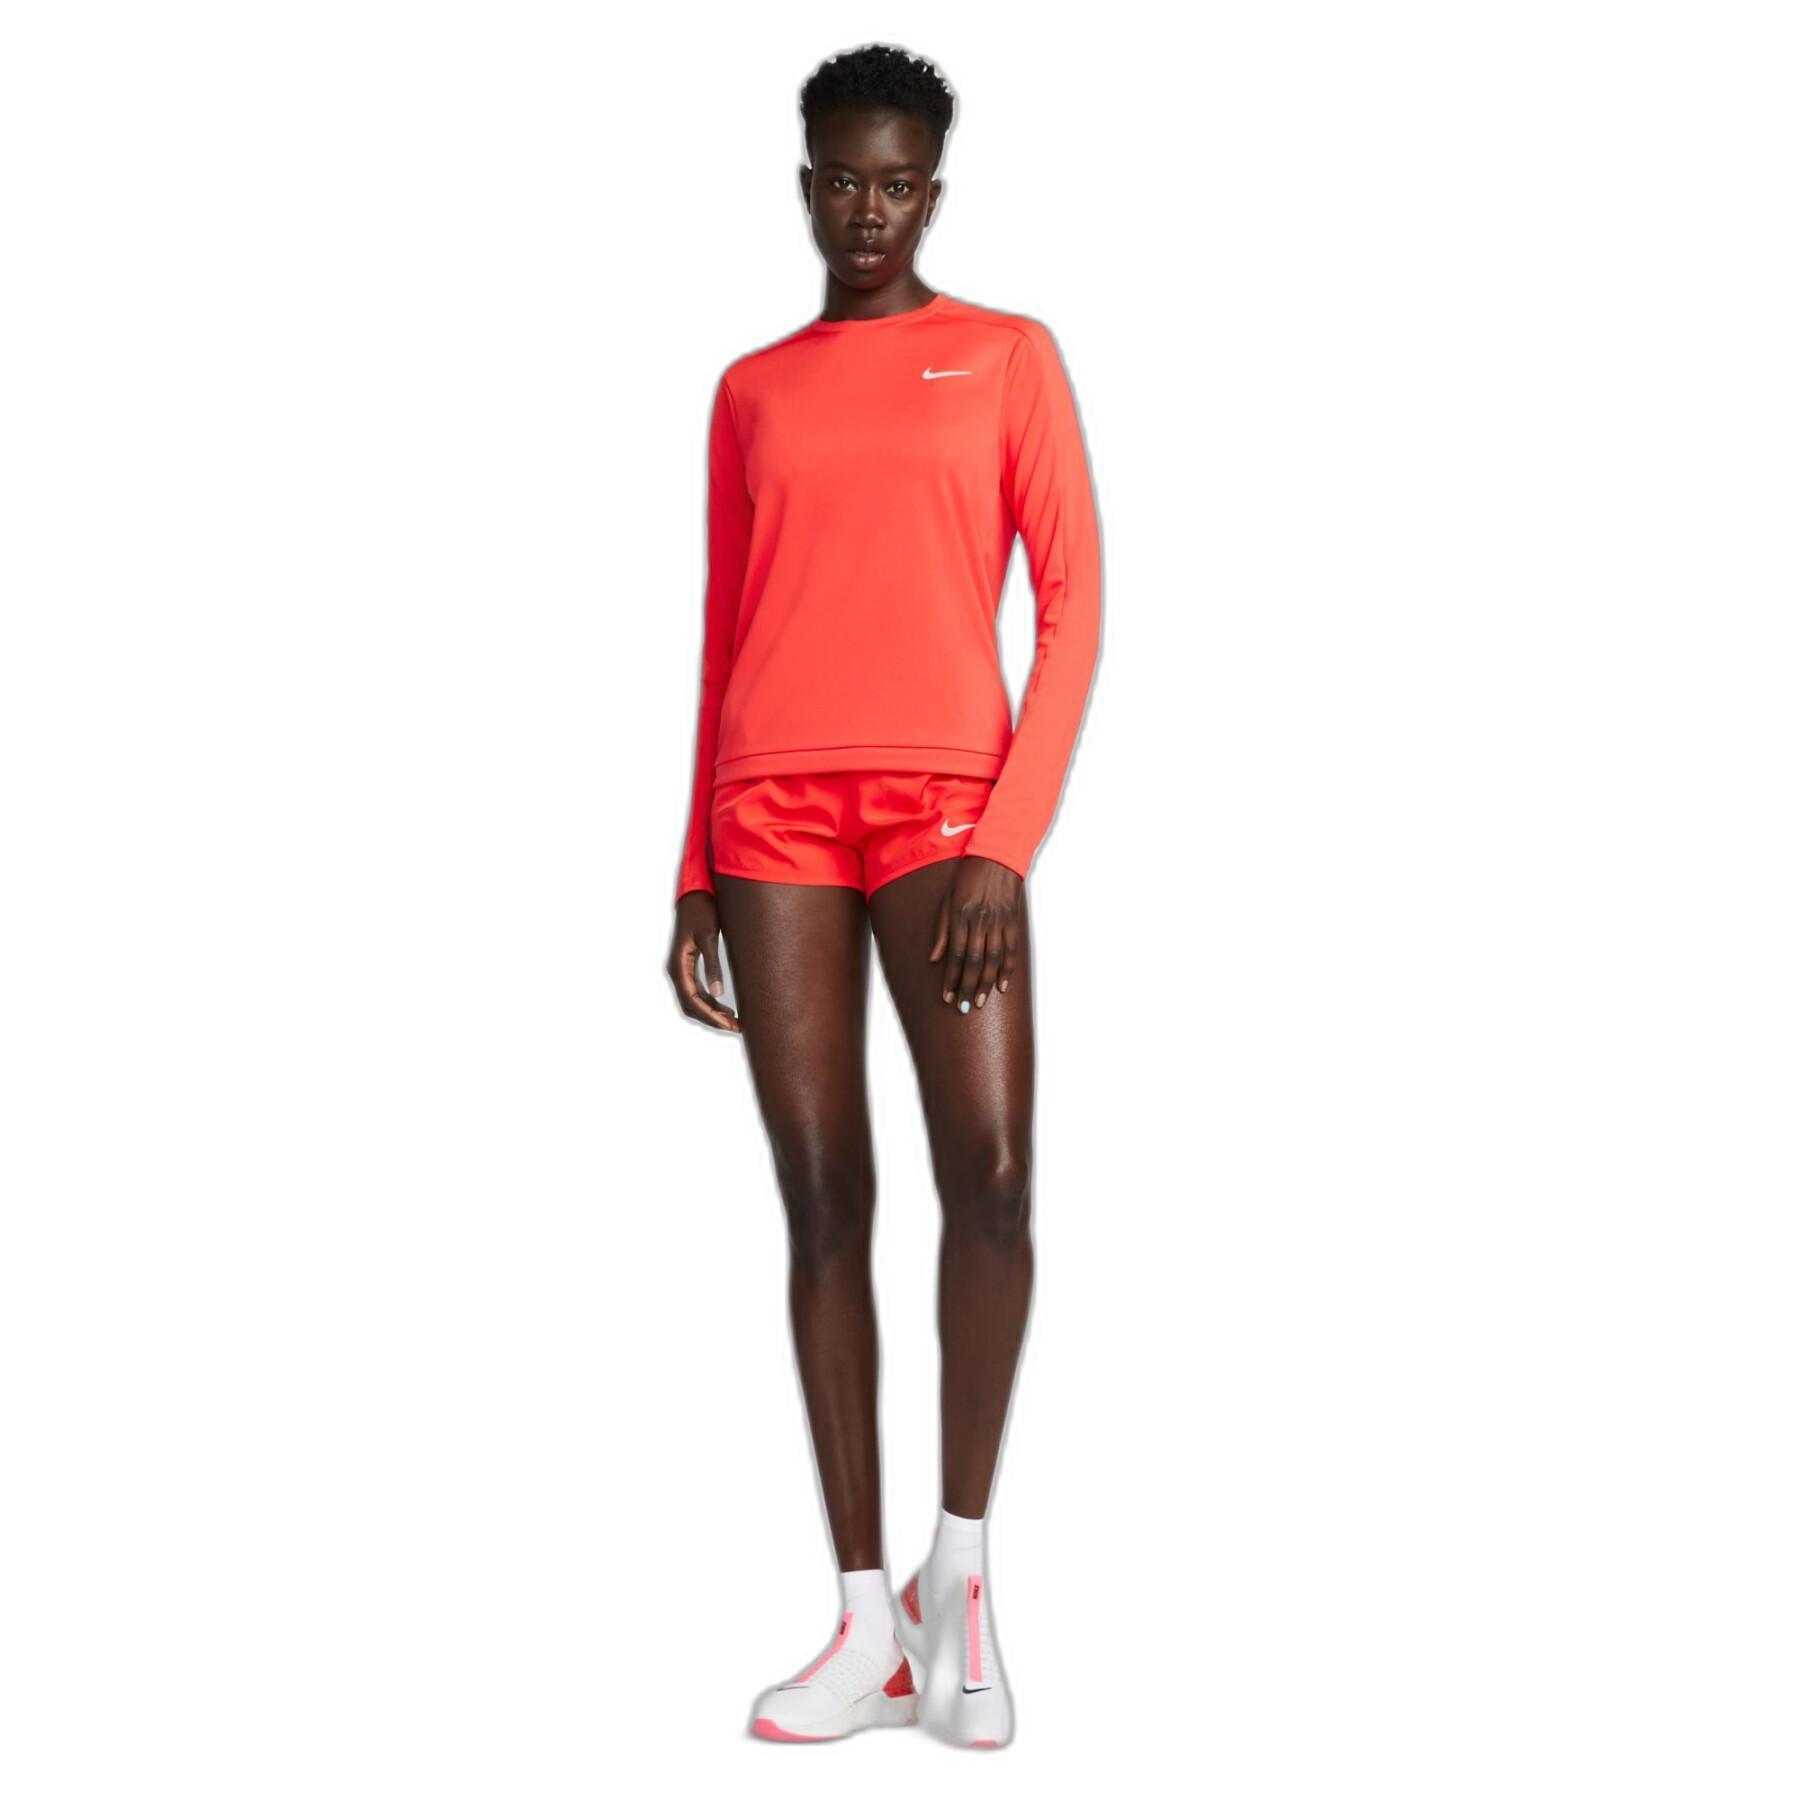 Women's shorts Nike 10K